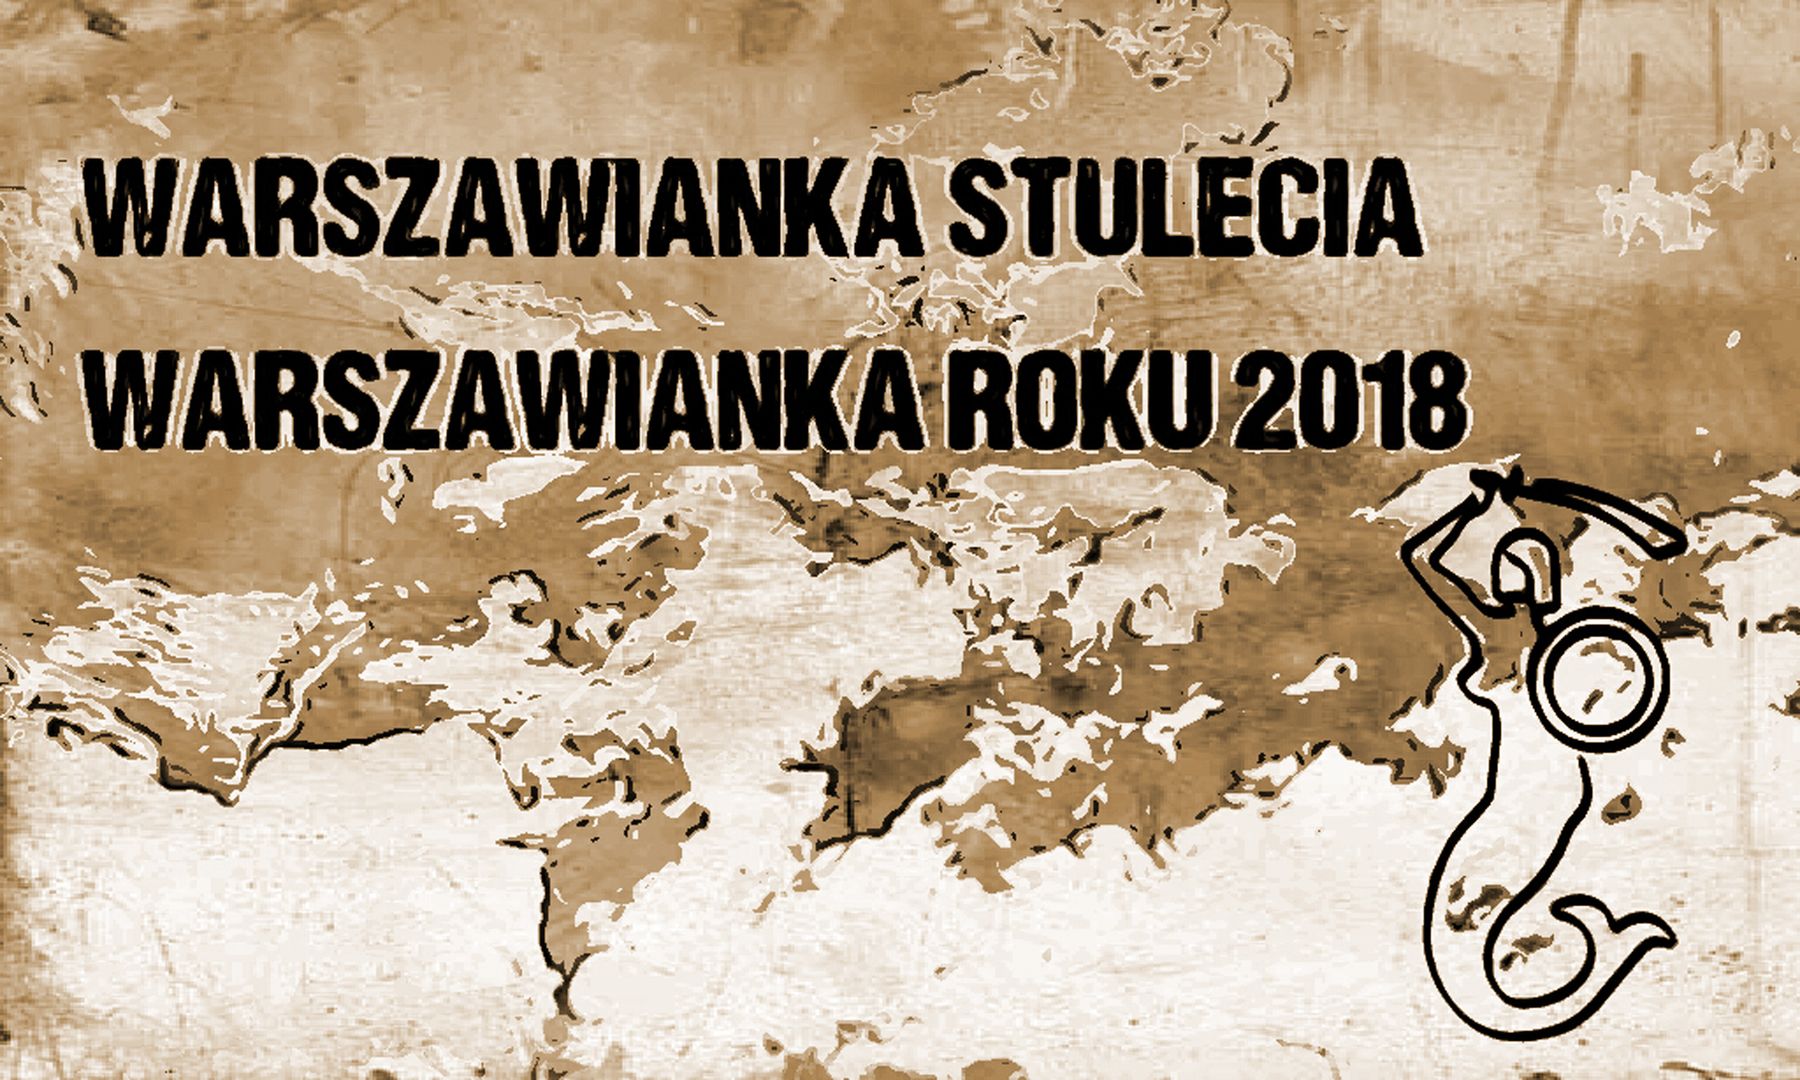 Warszawianka Stulecia i Warszawianka Roku 2018